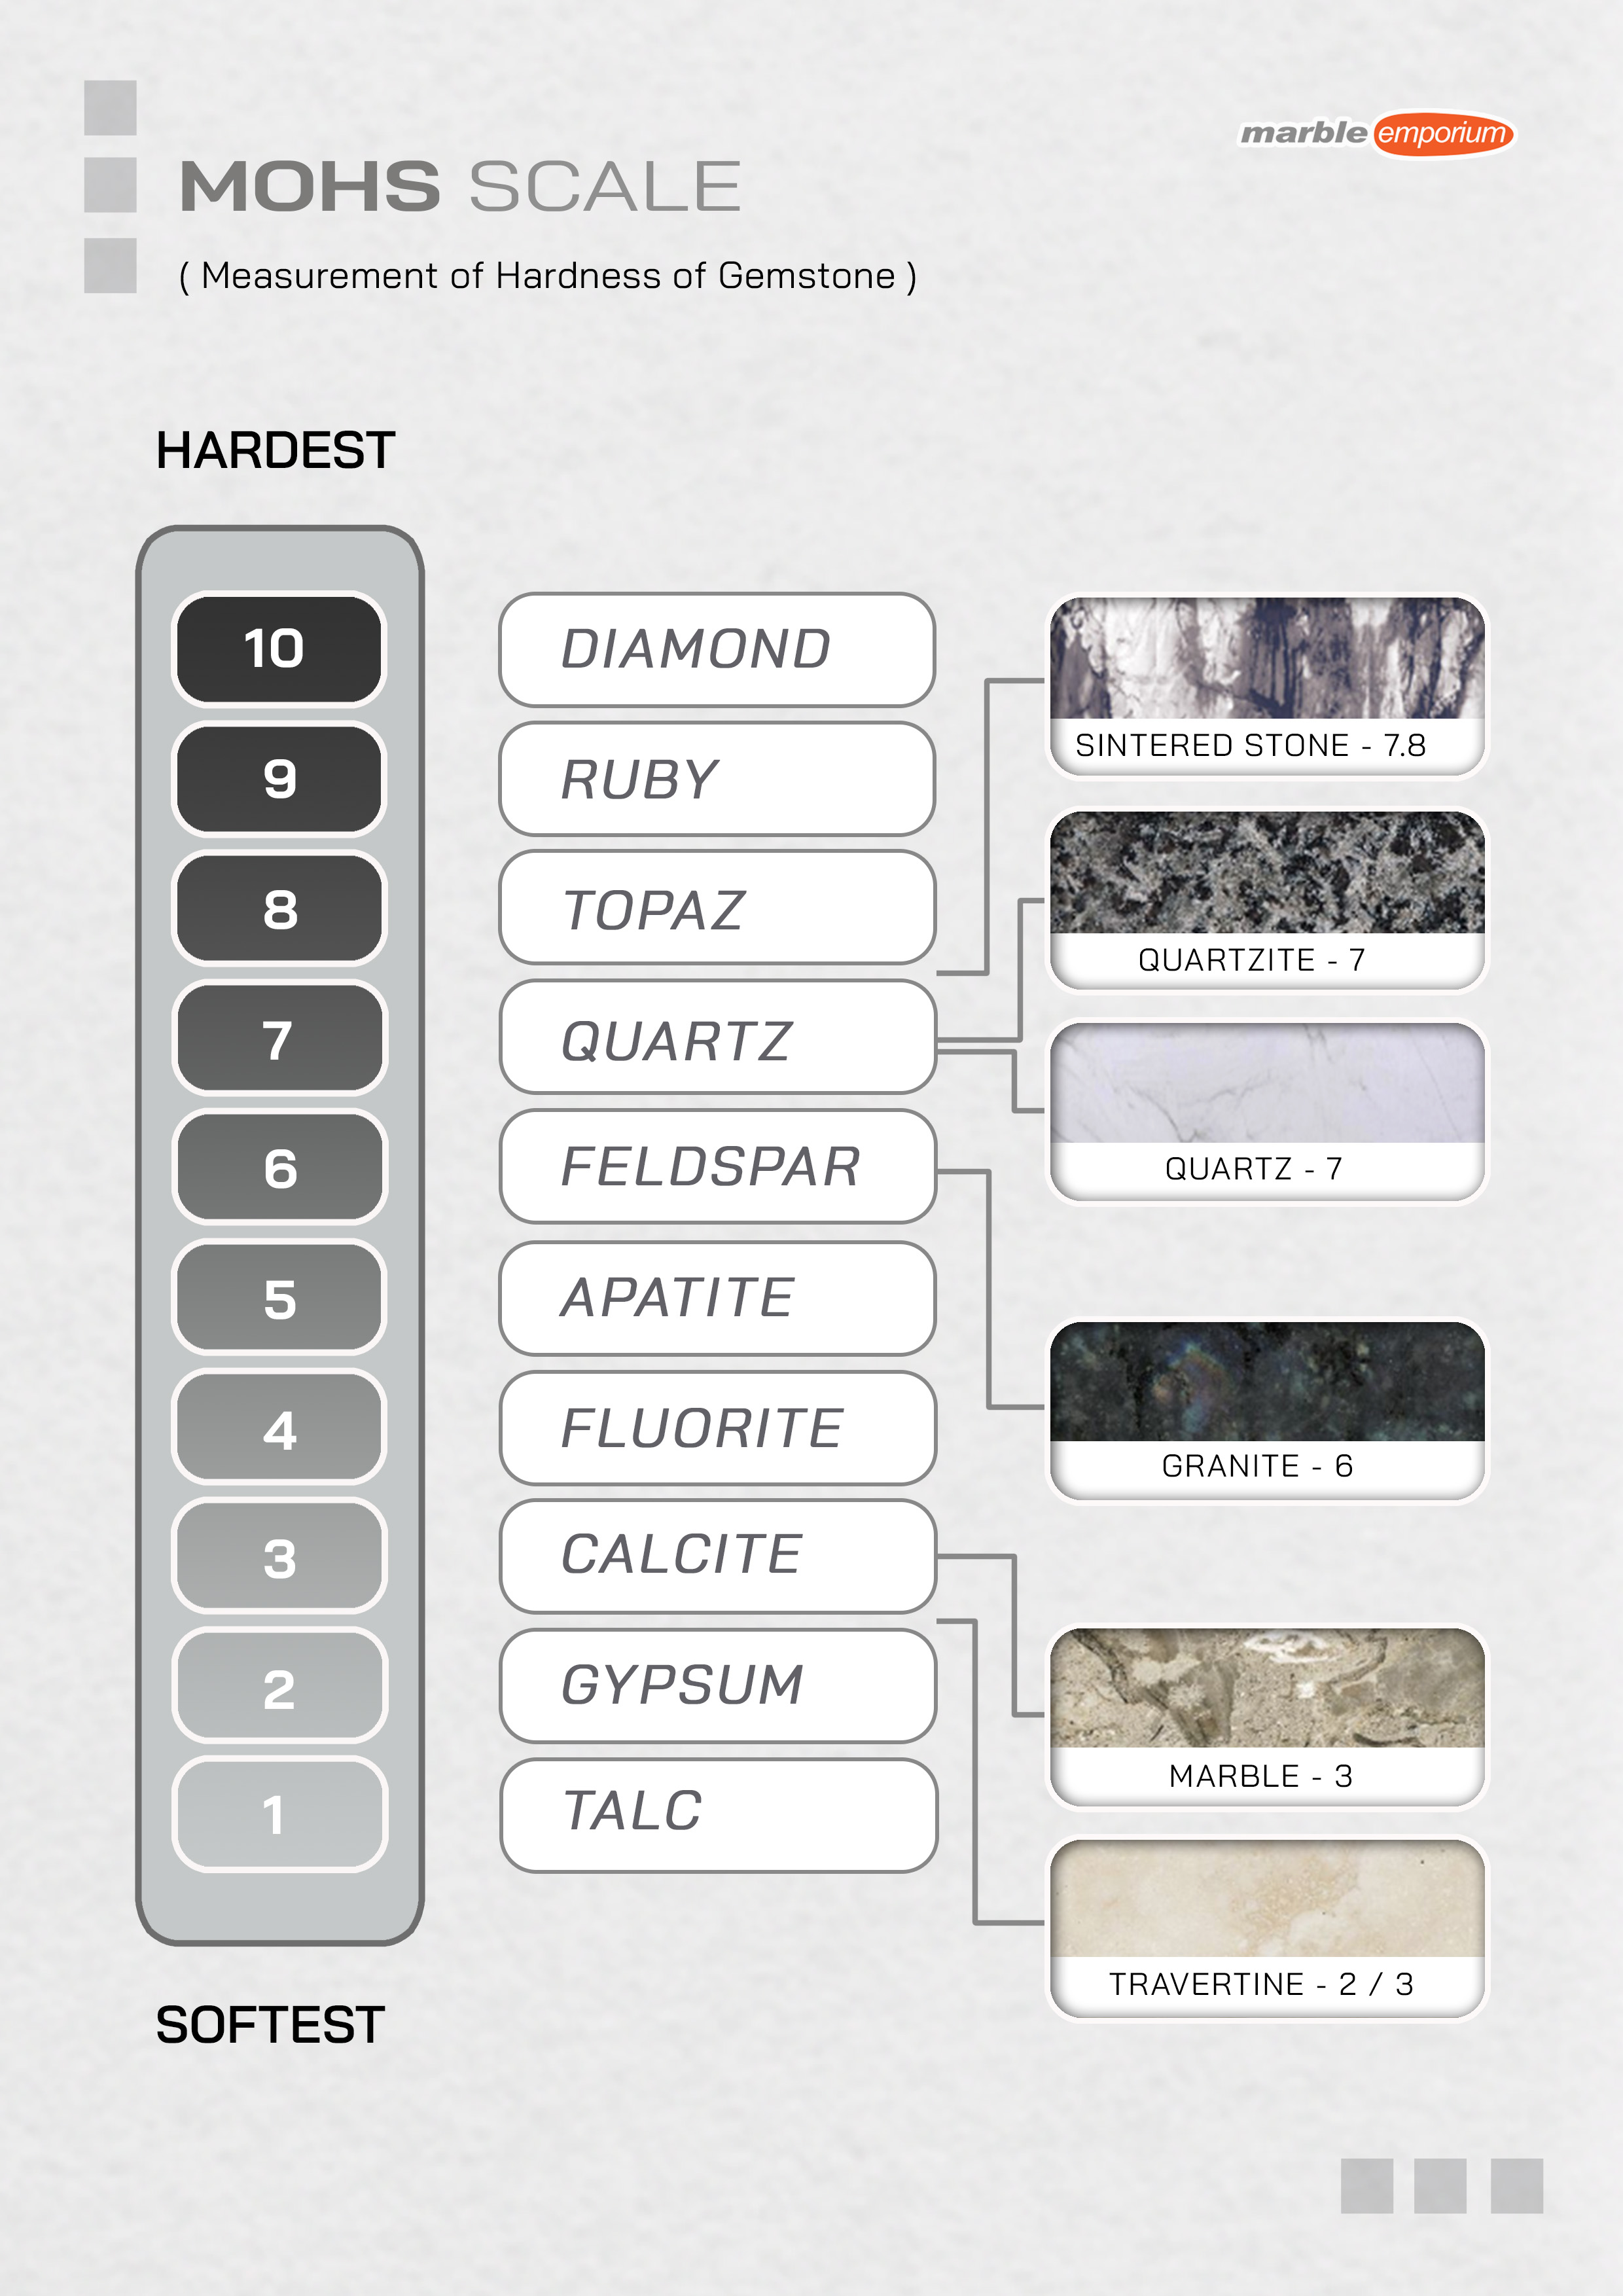 Marble Emporium | How we work page 07 - MOHS Scale (Measurement of Hardness of Gemstone) | Sintered stone - 7.8, Quartzite – 7, Quartz – 7, Granite – 6, Marble – 3, Travertine - 2 / 3